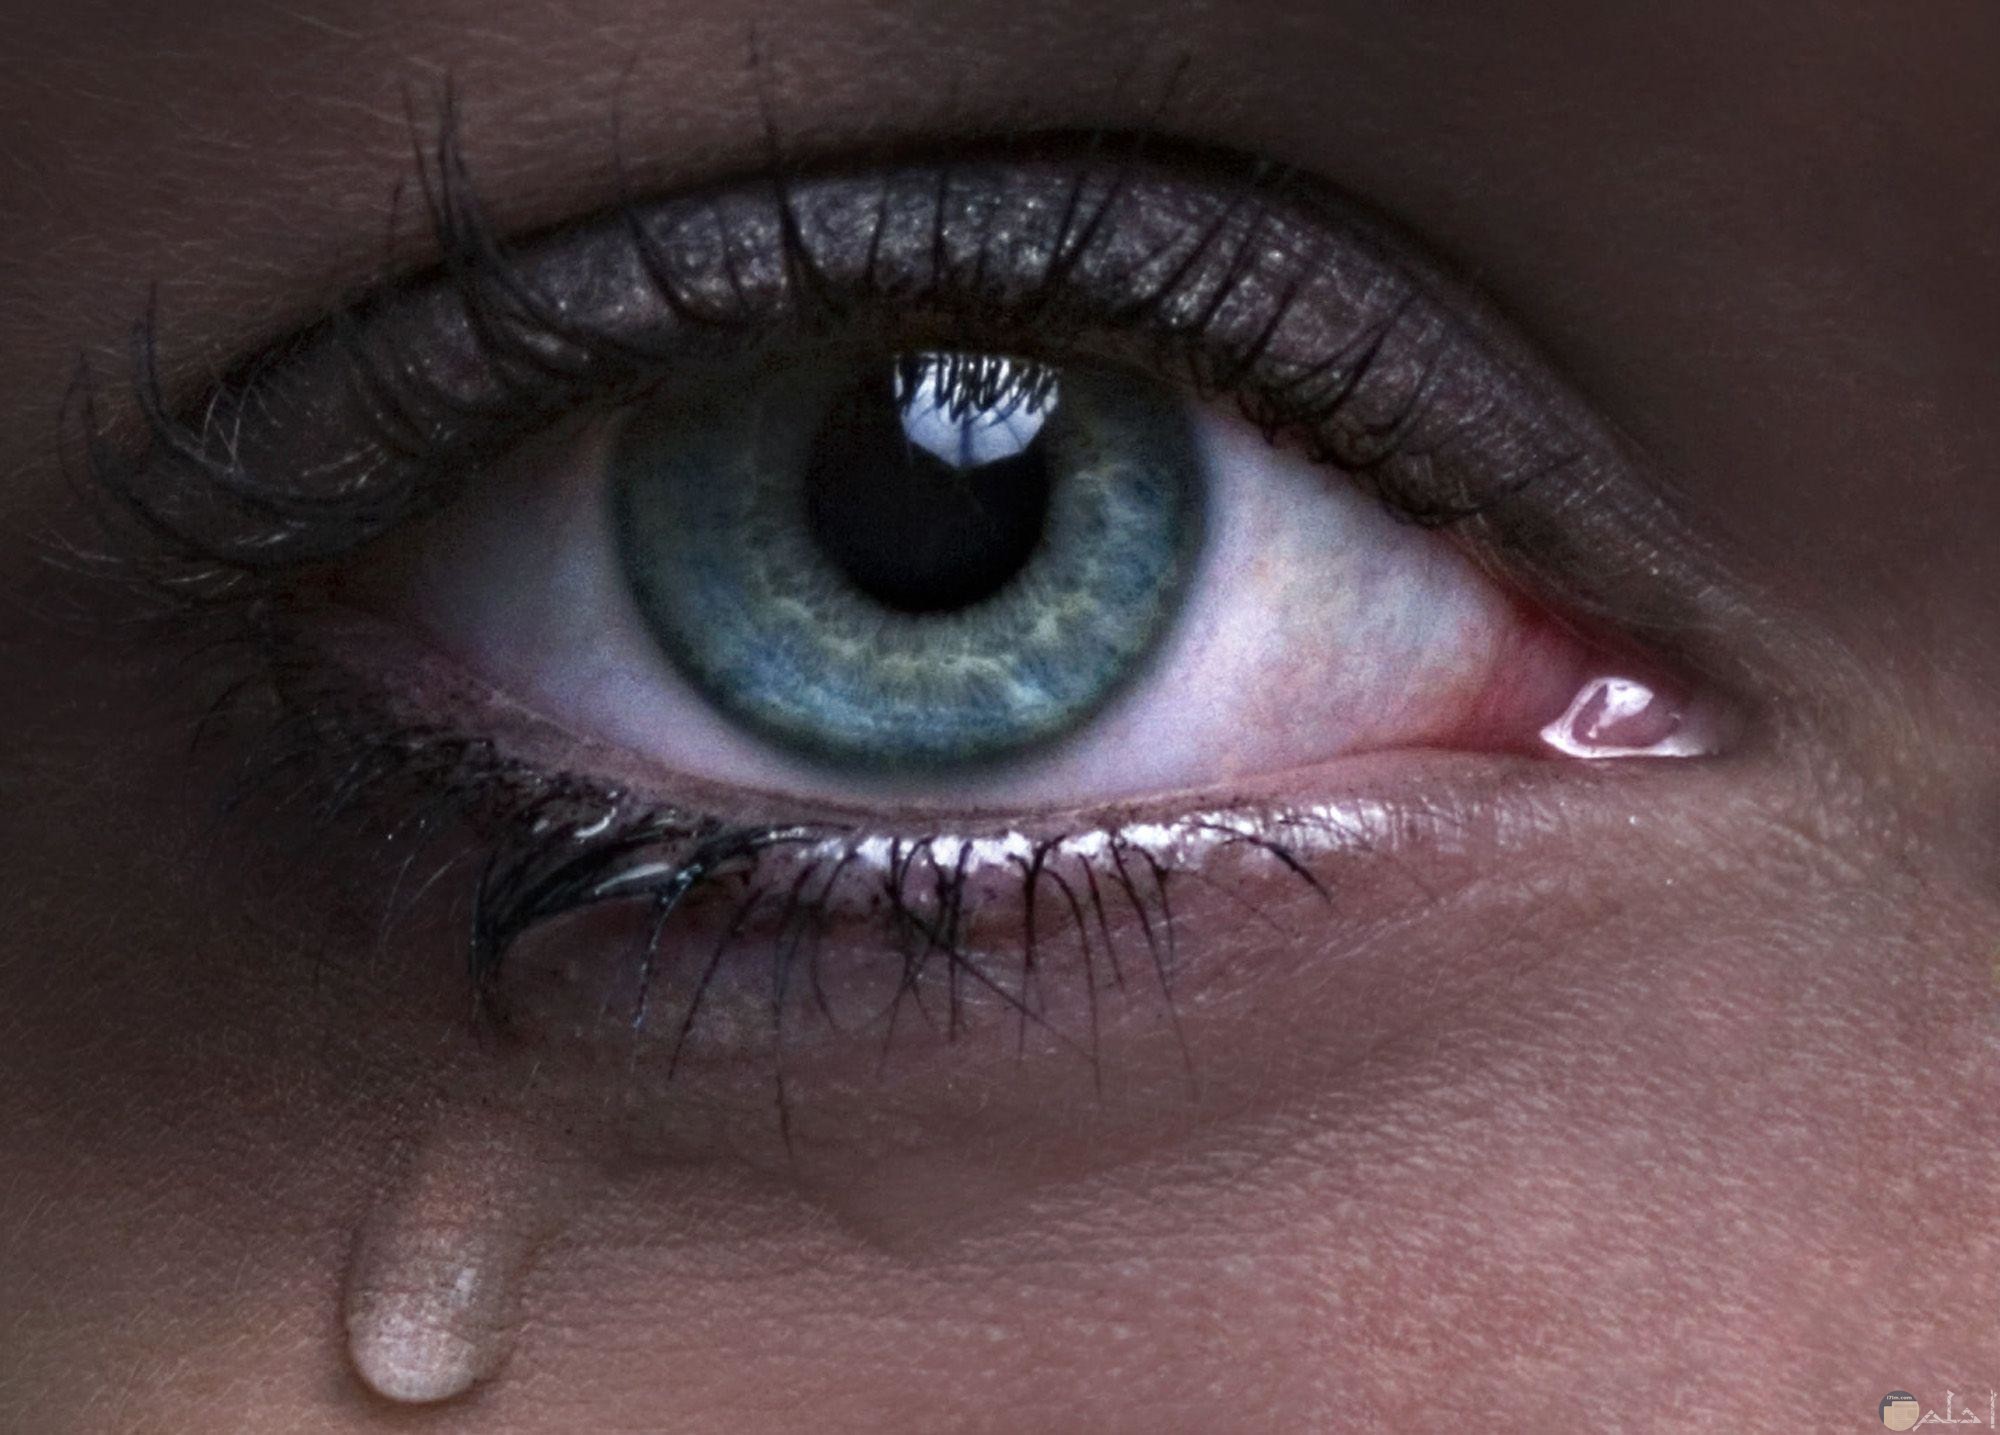 عين تبكي -ملونة و معبرة عن الحزن و الالم.